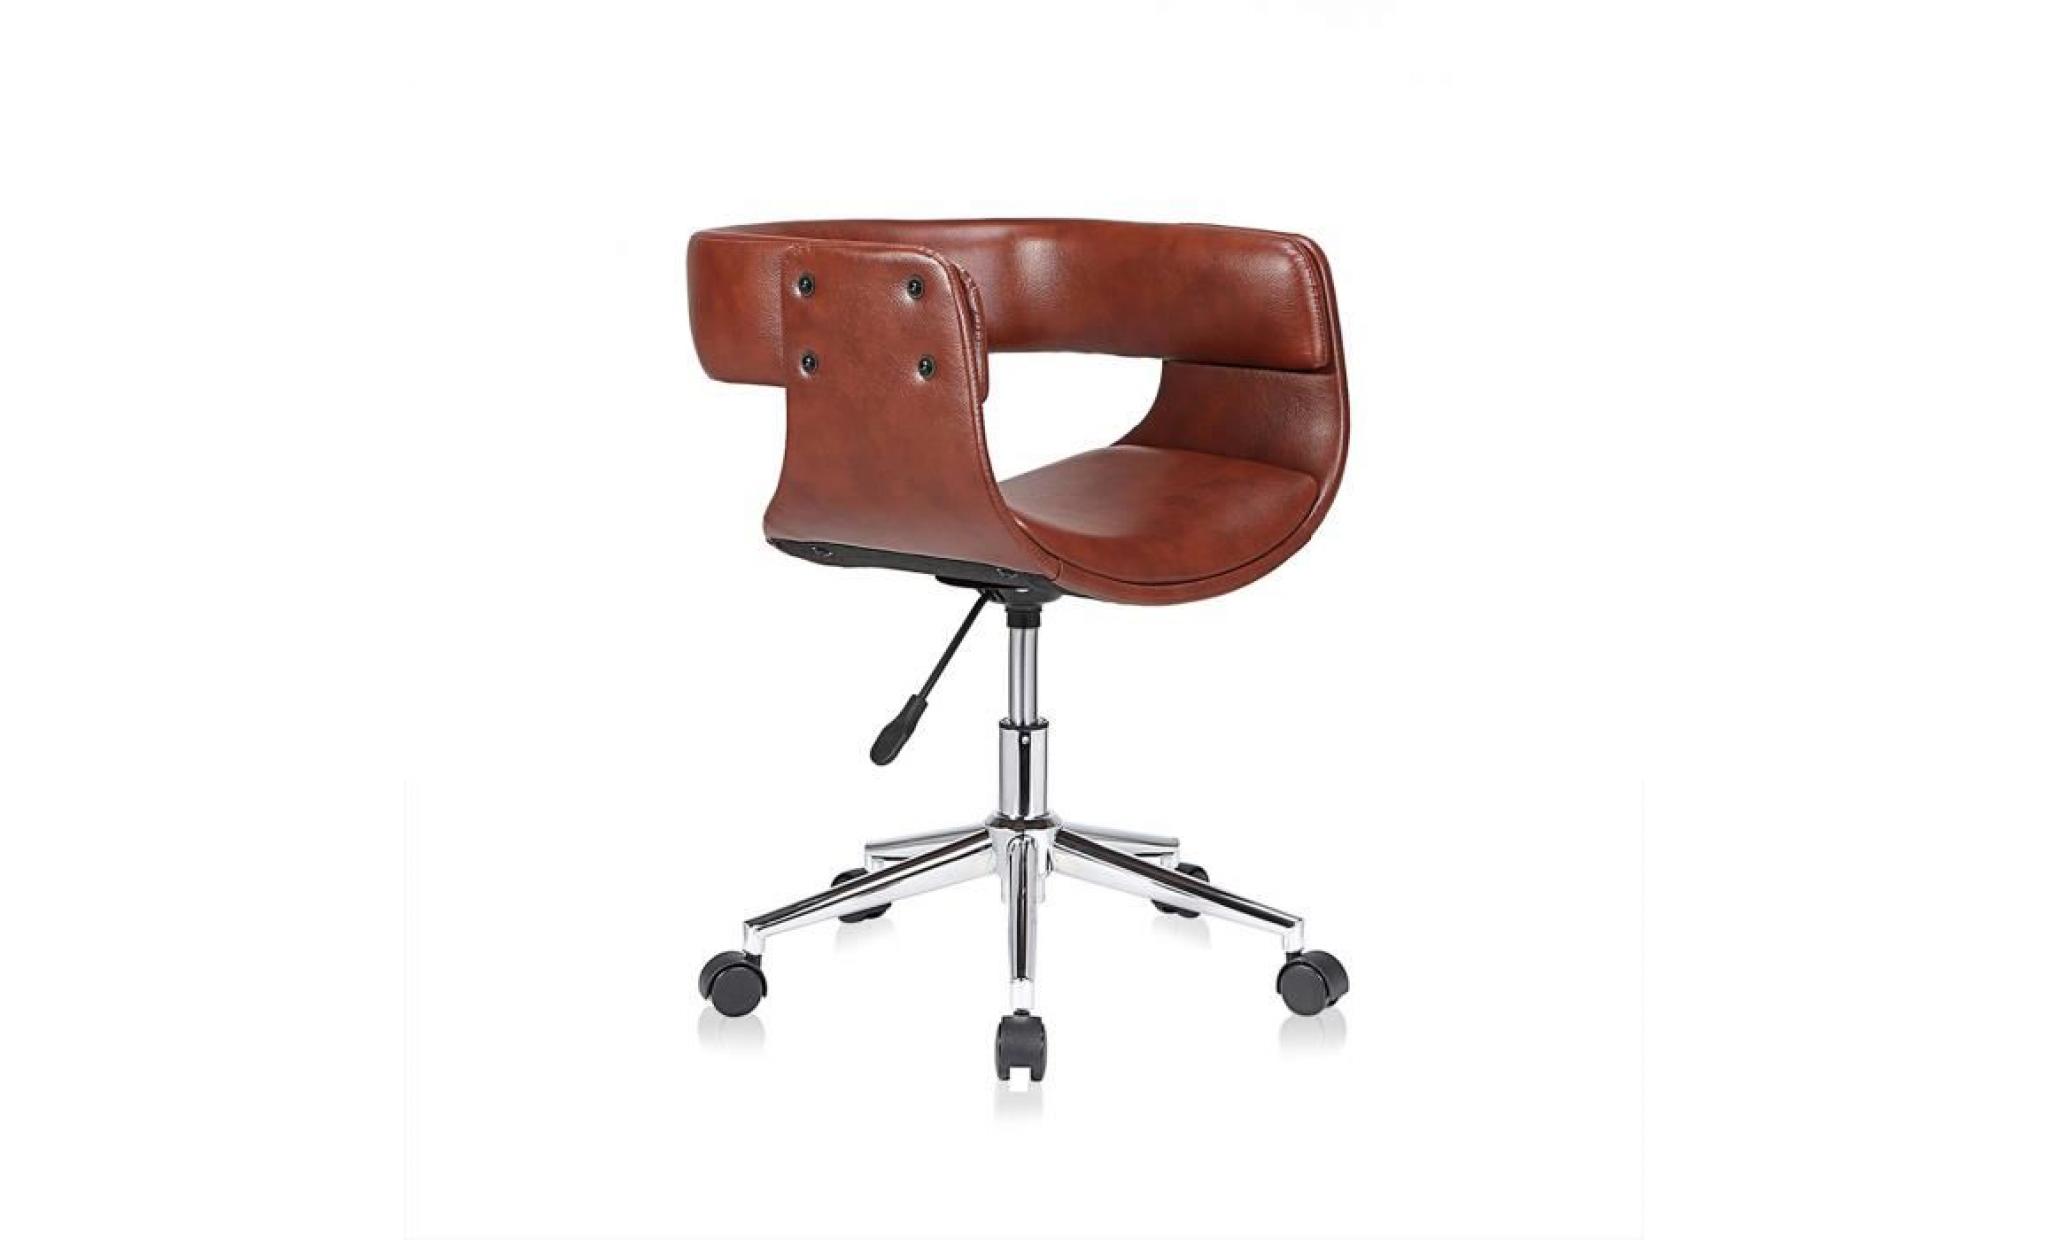 my sit tabouret de travail chaise de bureau francis en brun siège pivotant réglable en hauteur rembourré avec roulettes design rétro